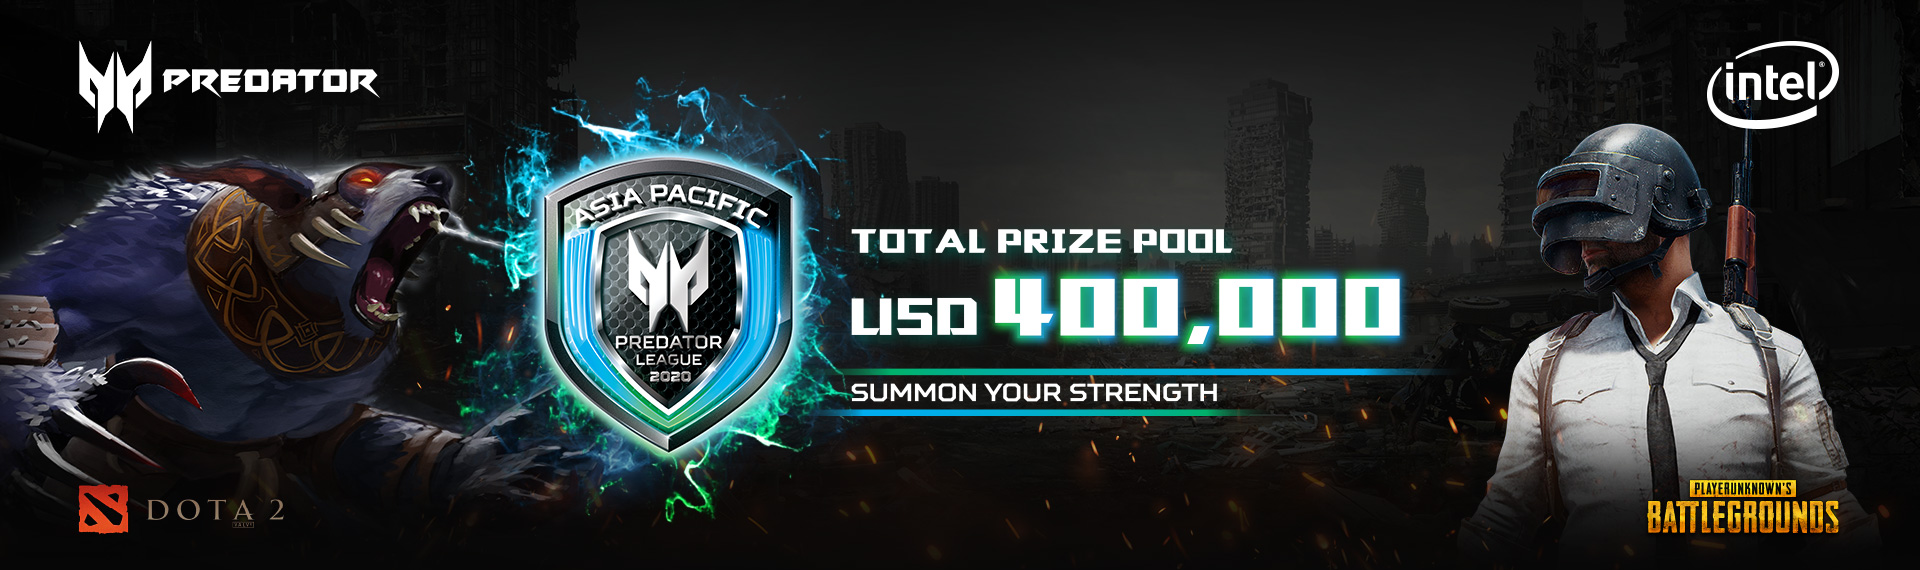 Segera Ikuti Online Qualifier di Predator League 2020 dan Raih Prize Pool Senilai USD 400.000!